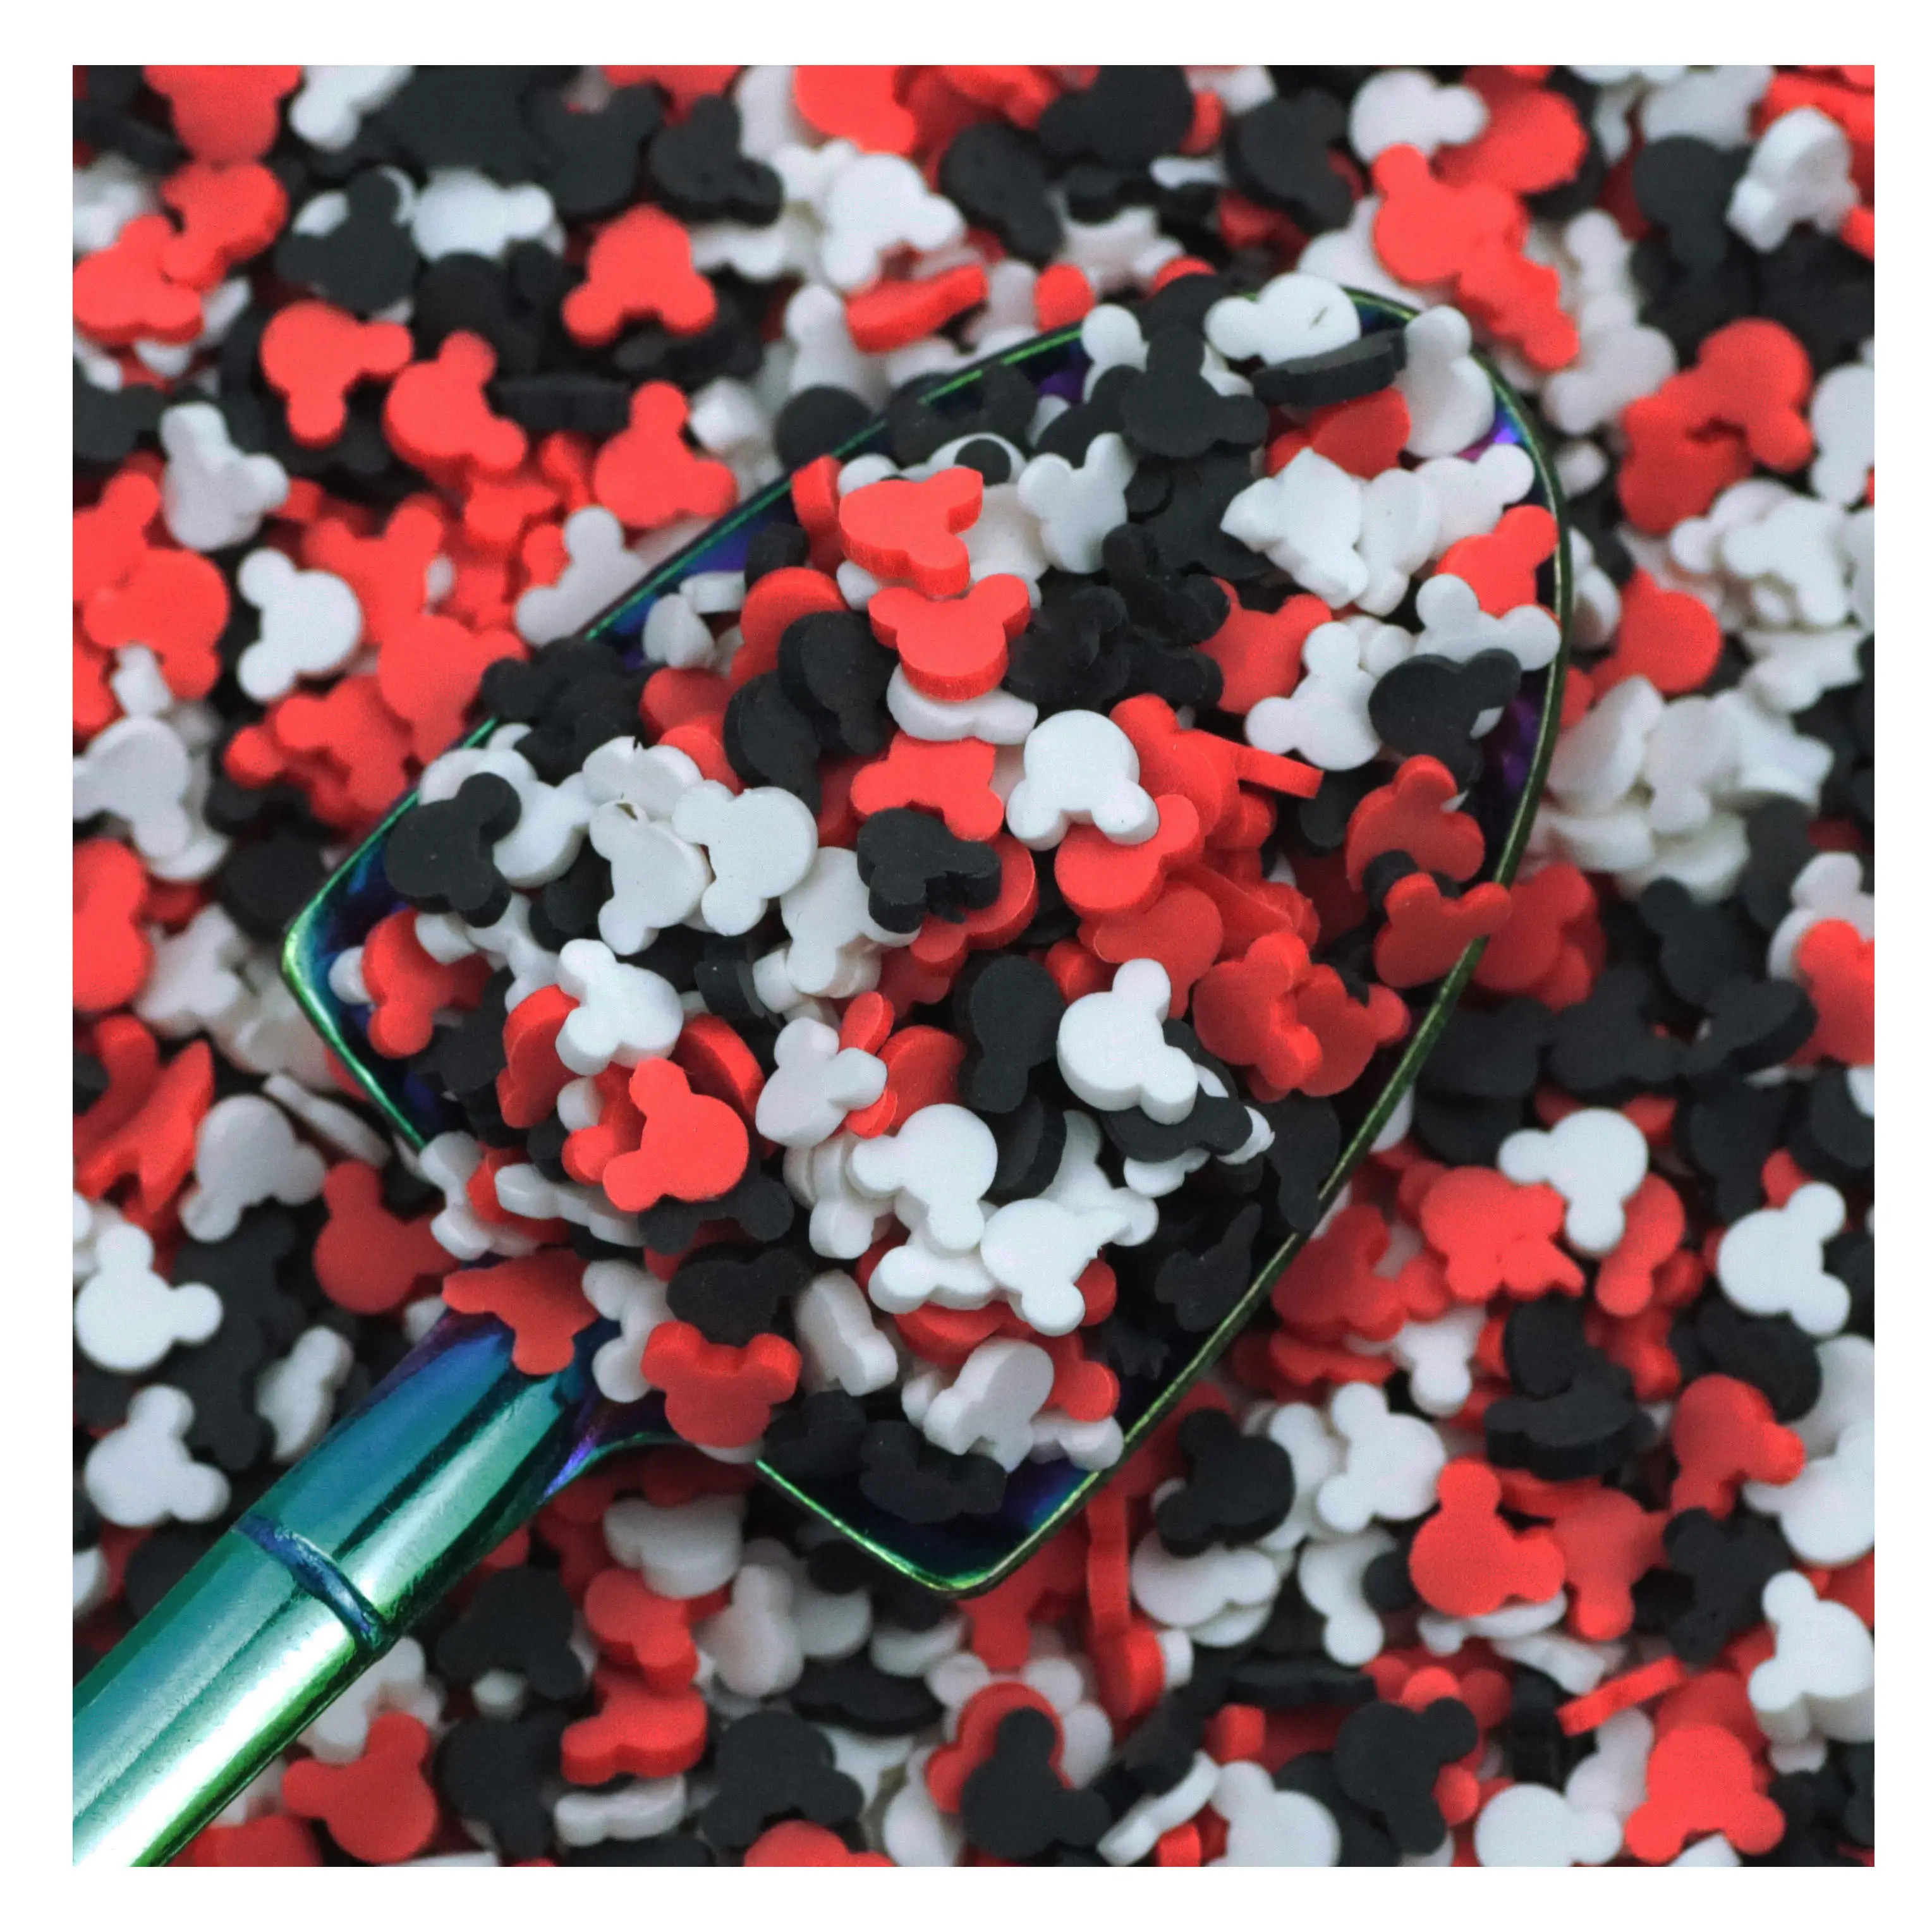 Oreille de souris d'Halloween en argile polymère rouge, blanc et noir, 1kg, tranche d'oreille de souris Slime DIY Craft Art Decoration Nail Tumblers